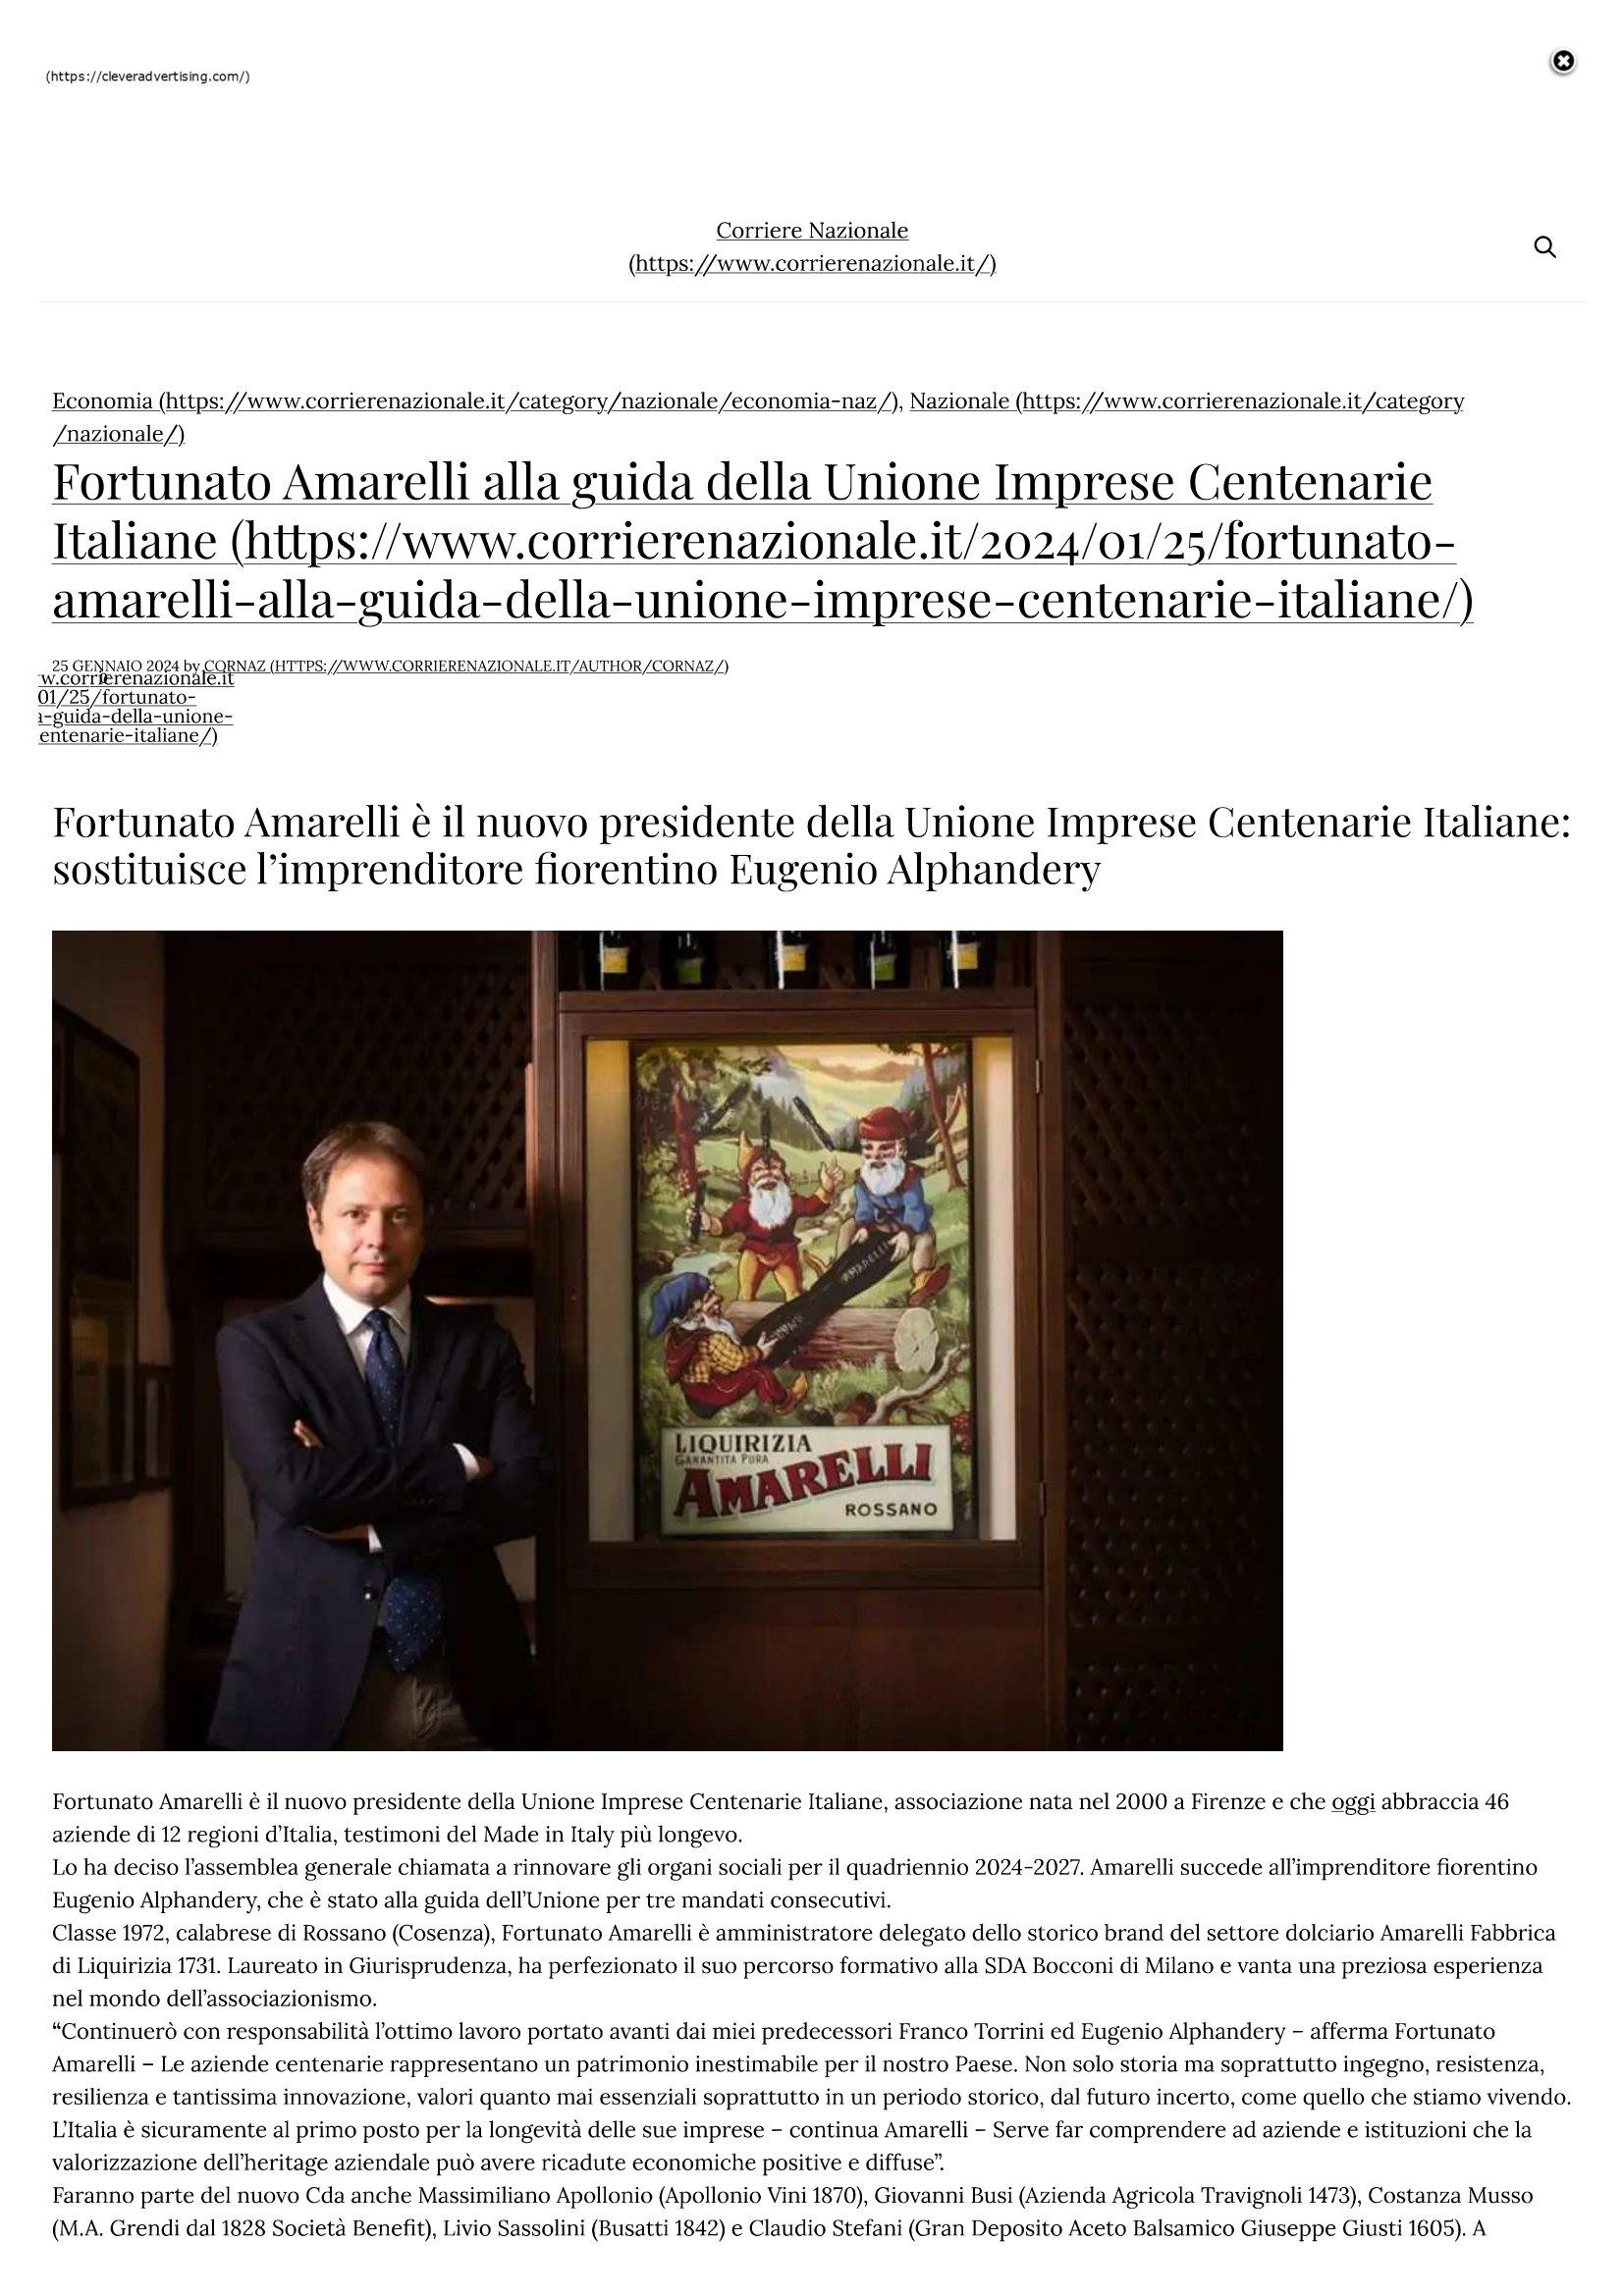 Corriere Nazionale Fortunato Amarelli alla guida della Unione Imprese Centenarie Italiane 25 gennaio 2024 1